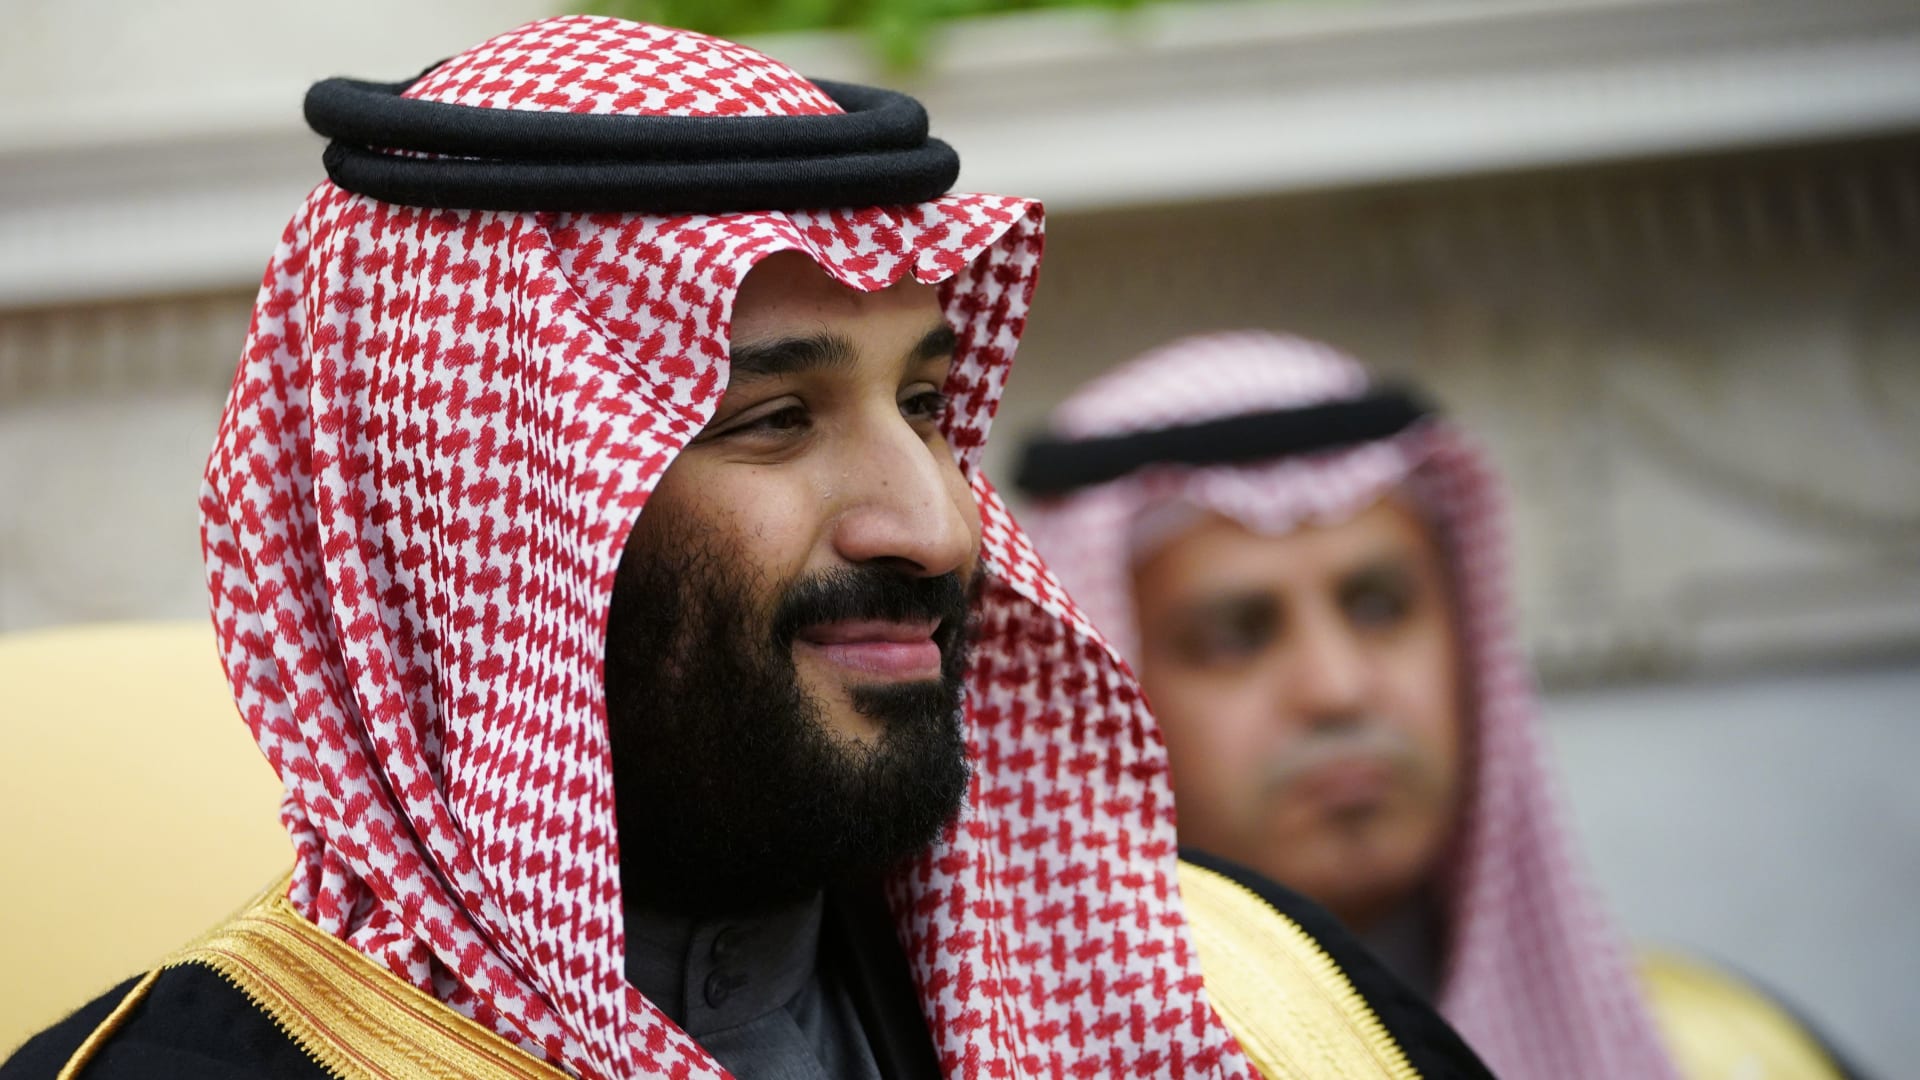 ولي العهد السعودي، الأمير محمد بن سلمان 